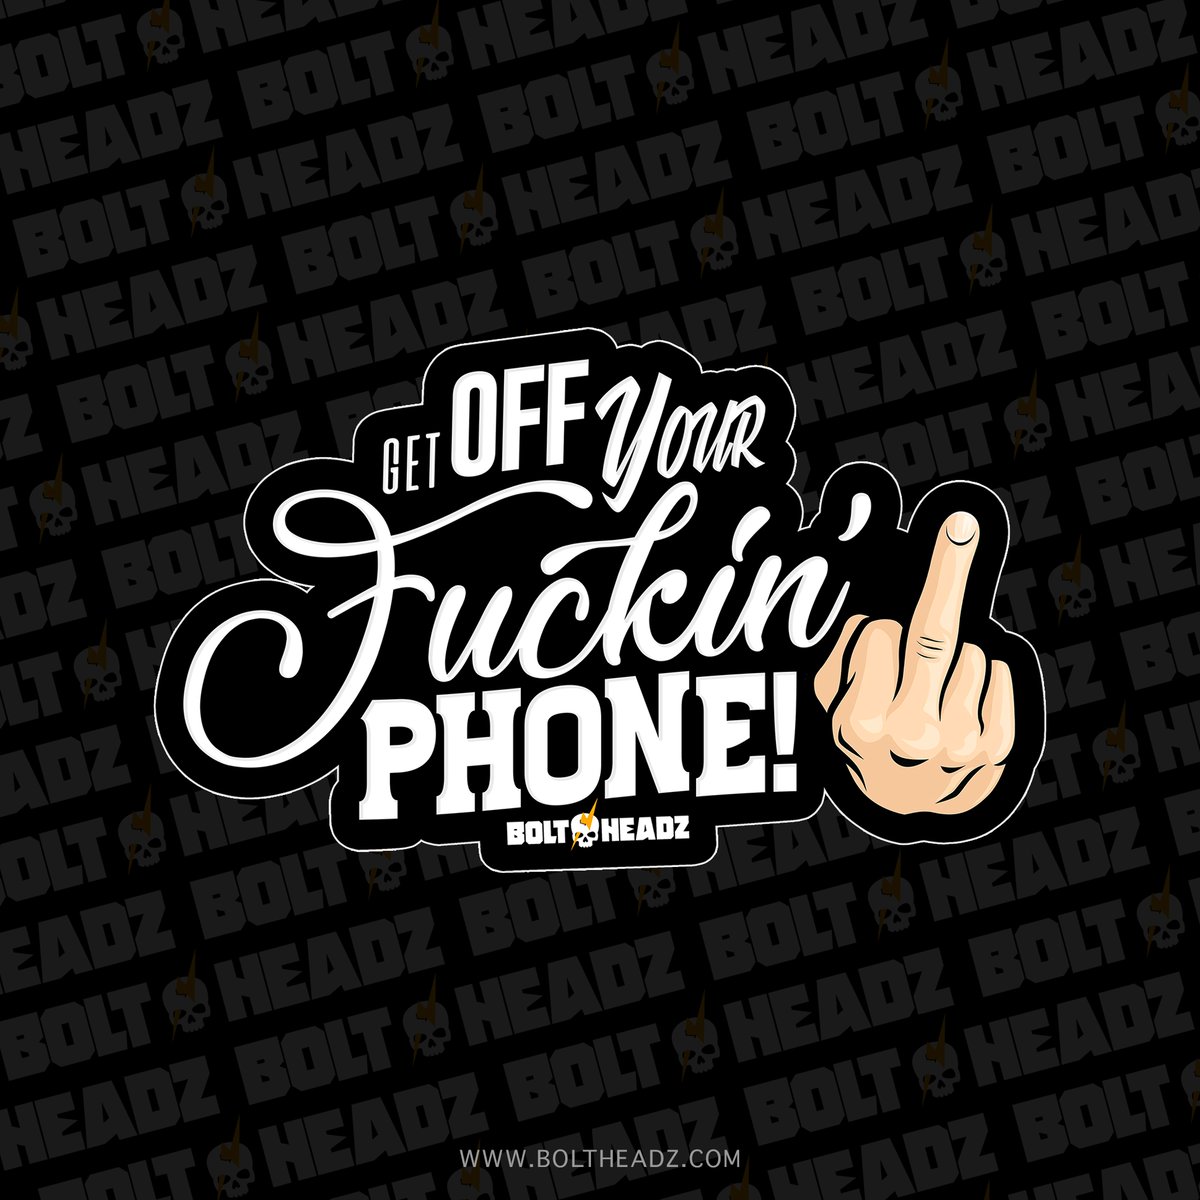 Get Off Your Fuckin' Phone! Die Cut Sticker